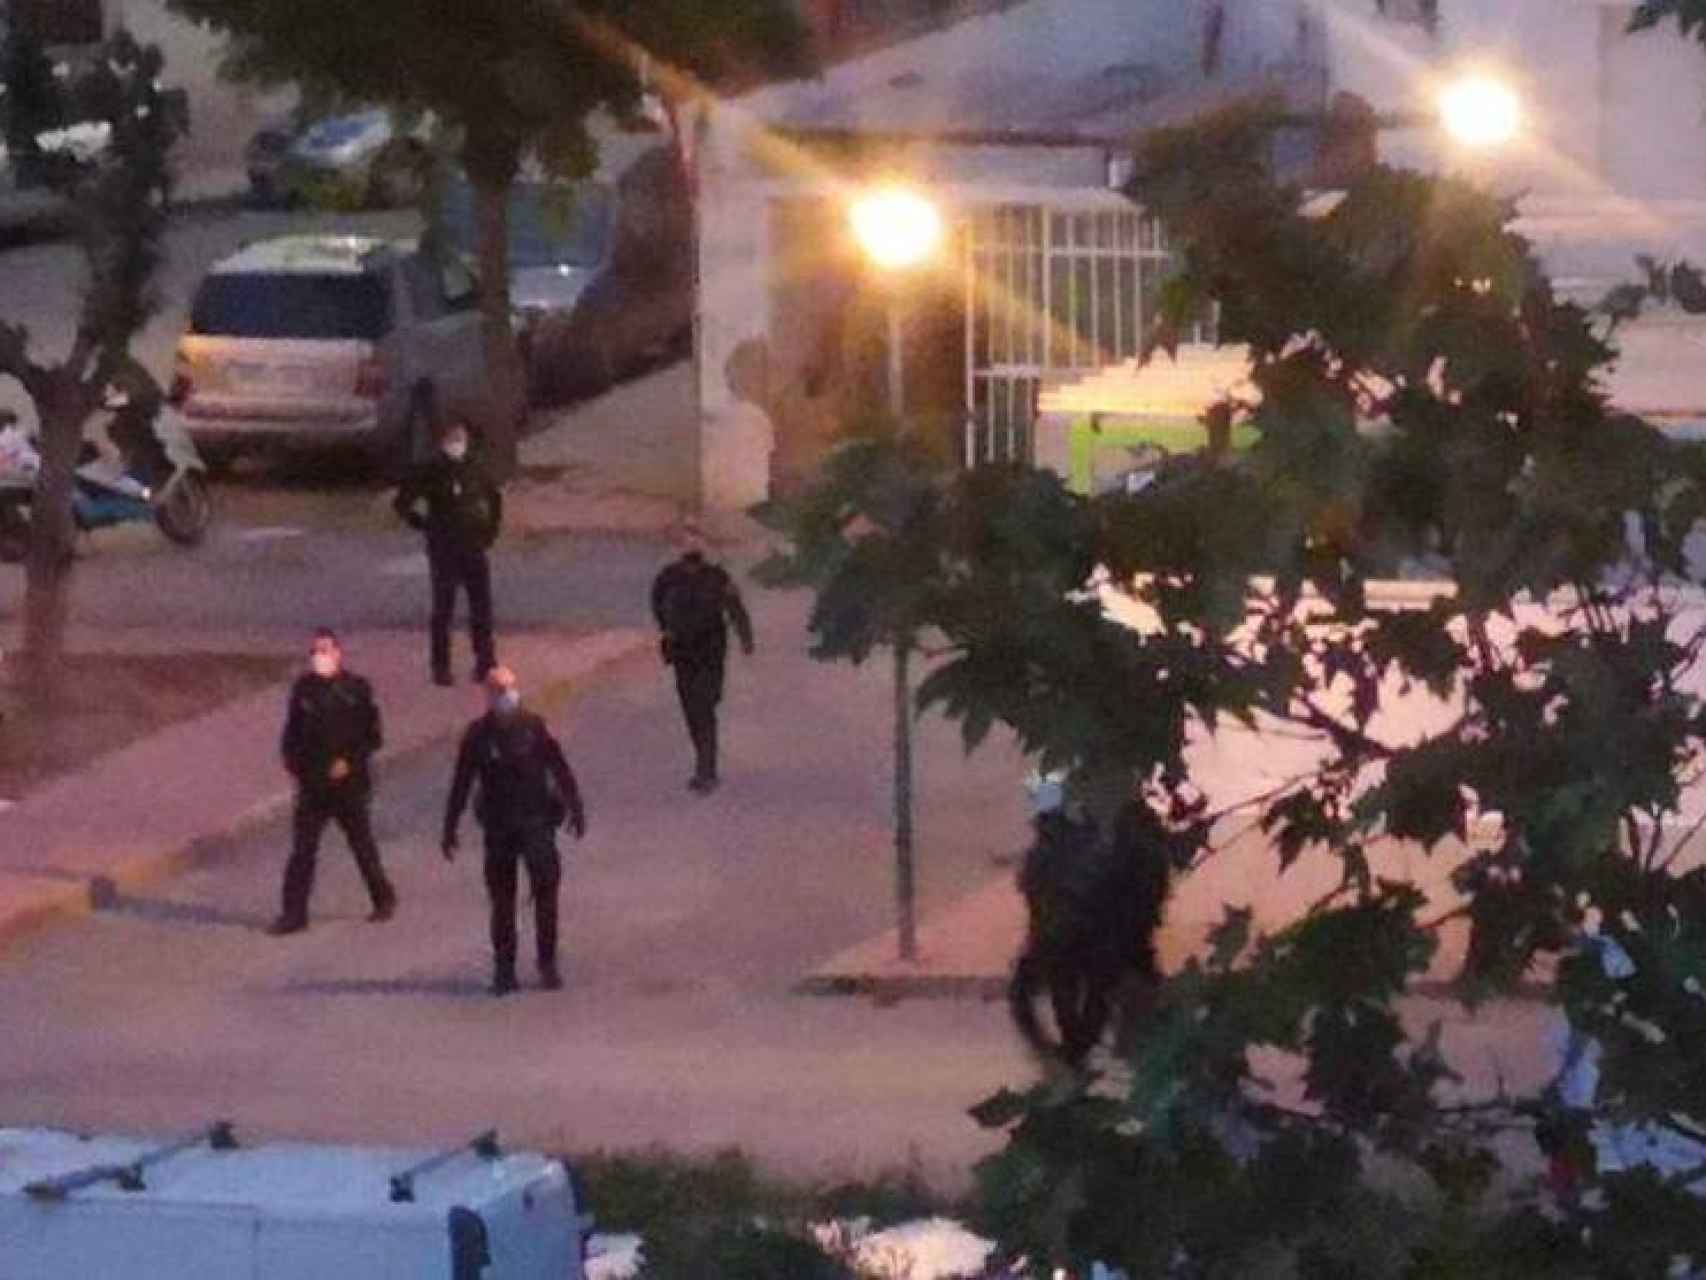 Imágenes después del tiroteo en Ciudad Real, con la policía tomando el barrio